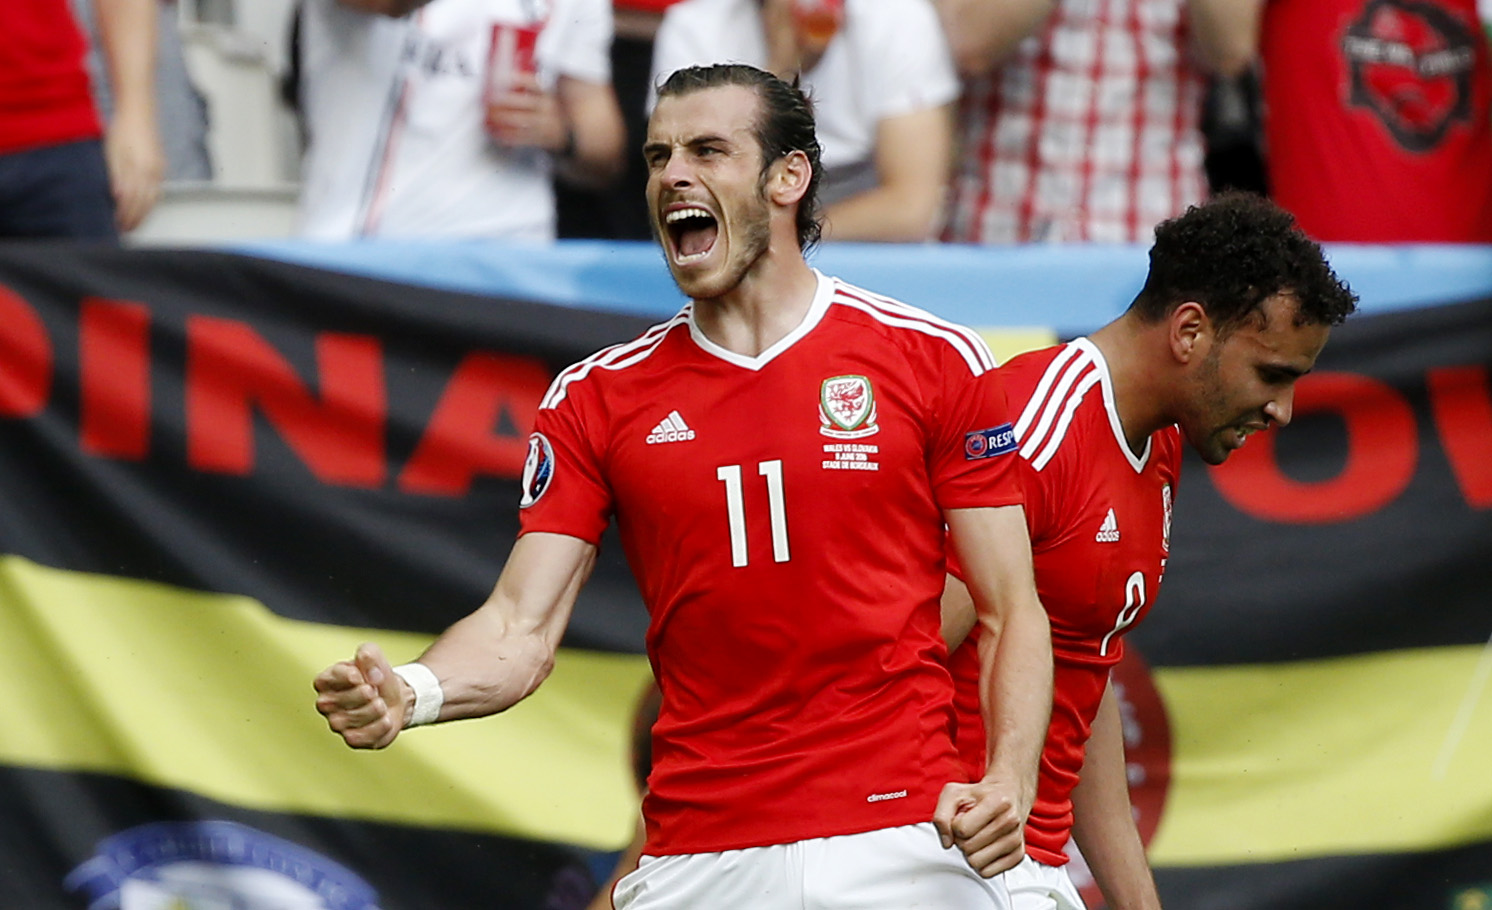 Bale: Dije que nosotros teníamos más orgullo, no que Inglaterra no tuviera